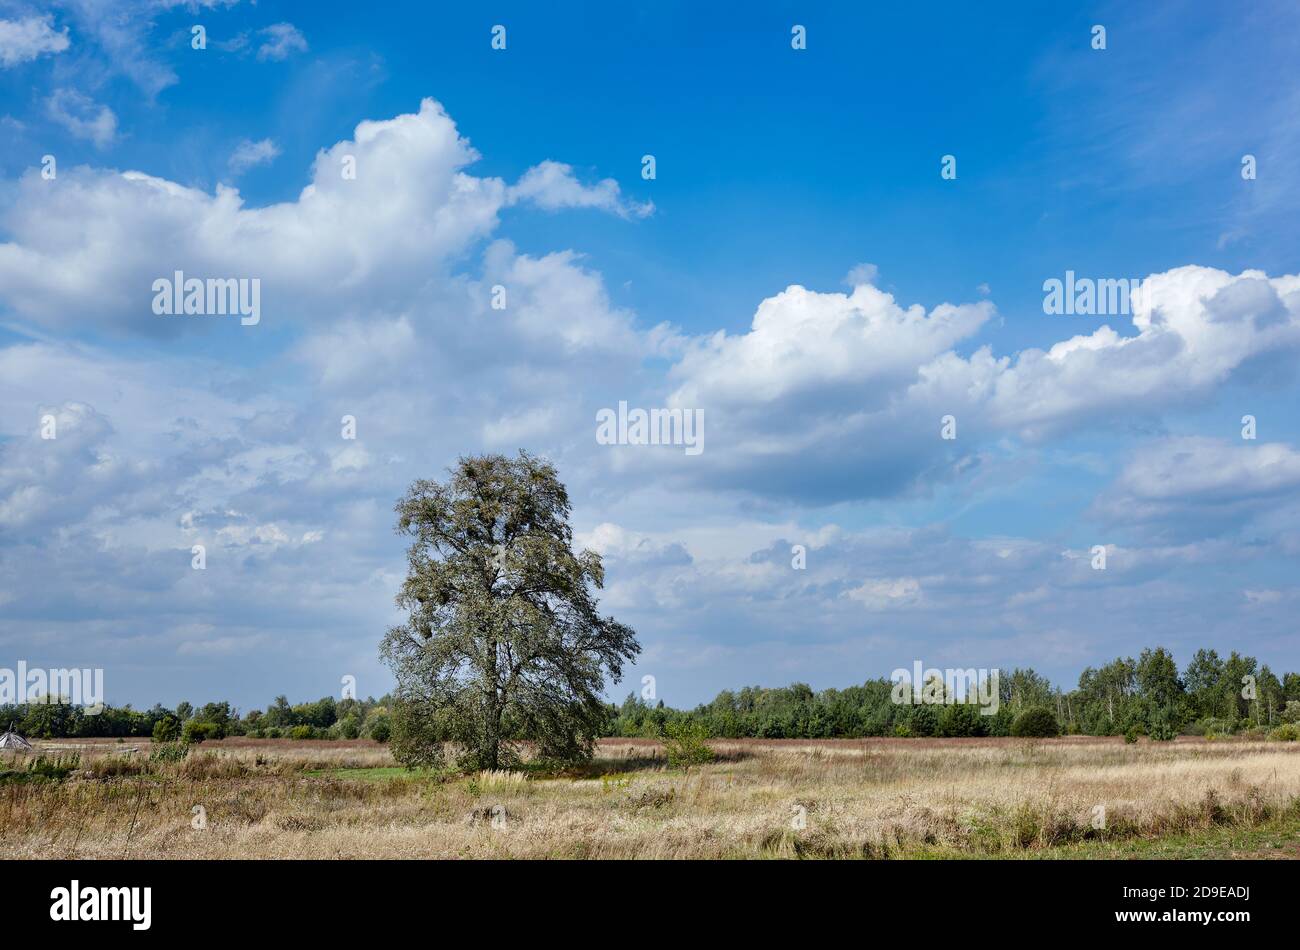 Baum auf dem Feld gegen einen blauen Himmel mit Wolken an einem sonnigen Tag. Wunderschöne Naturlandschaft Stockfoto